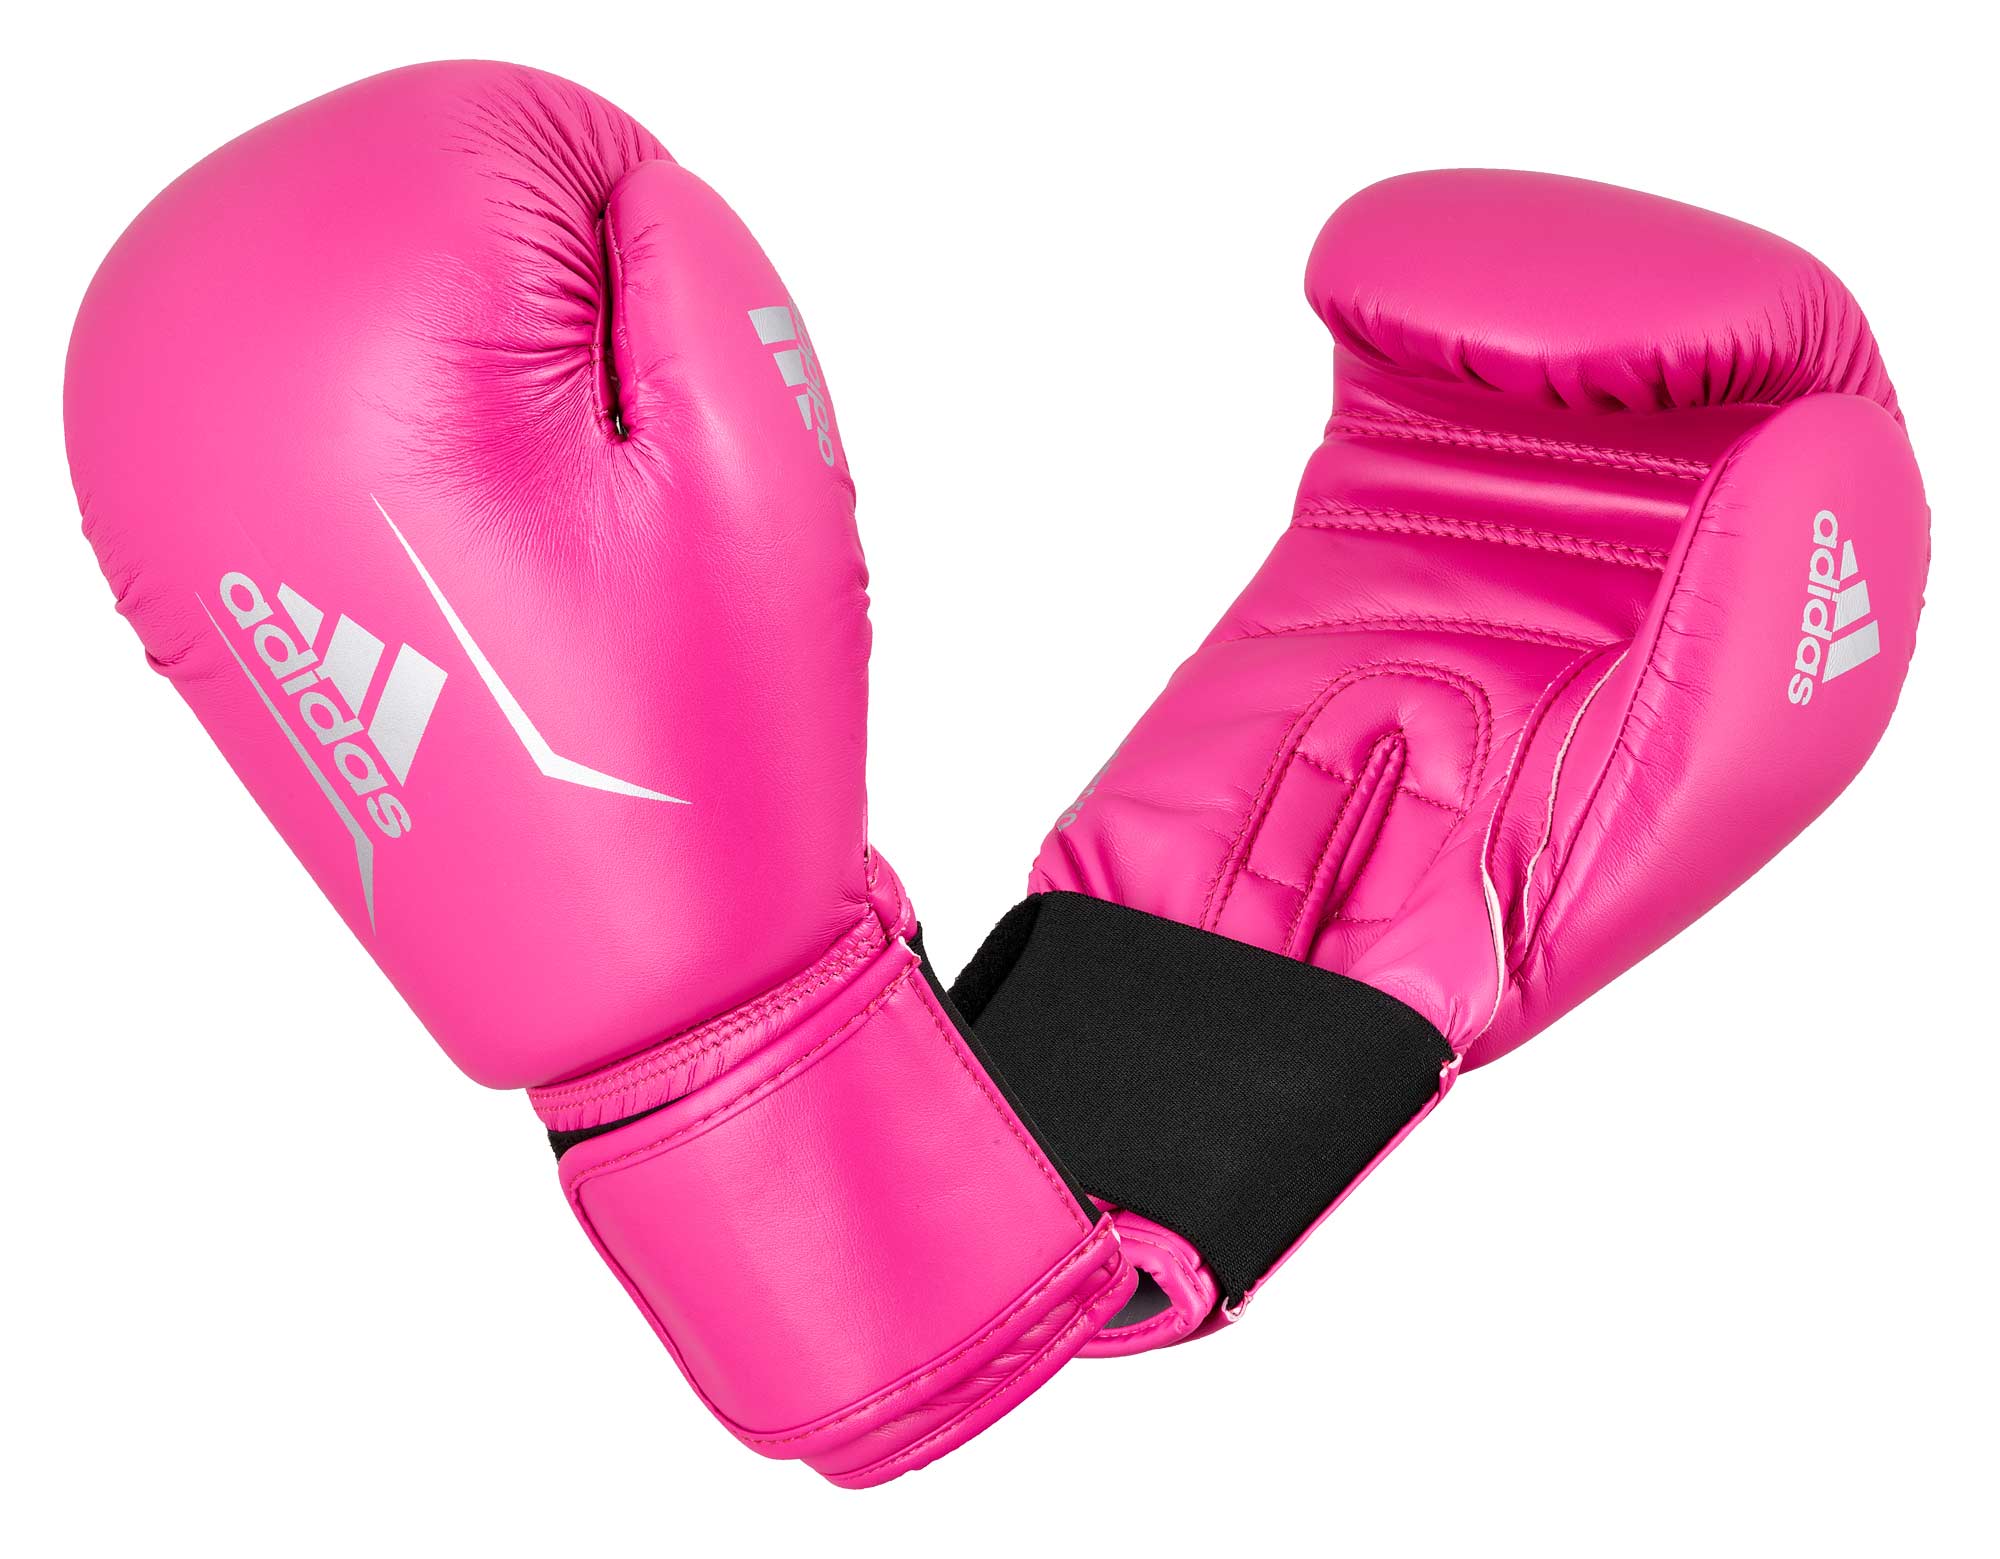 adidas boxing glove Speed 50 ADISBG50, pink/silver